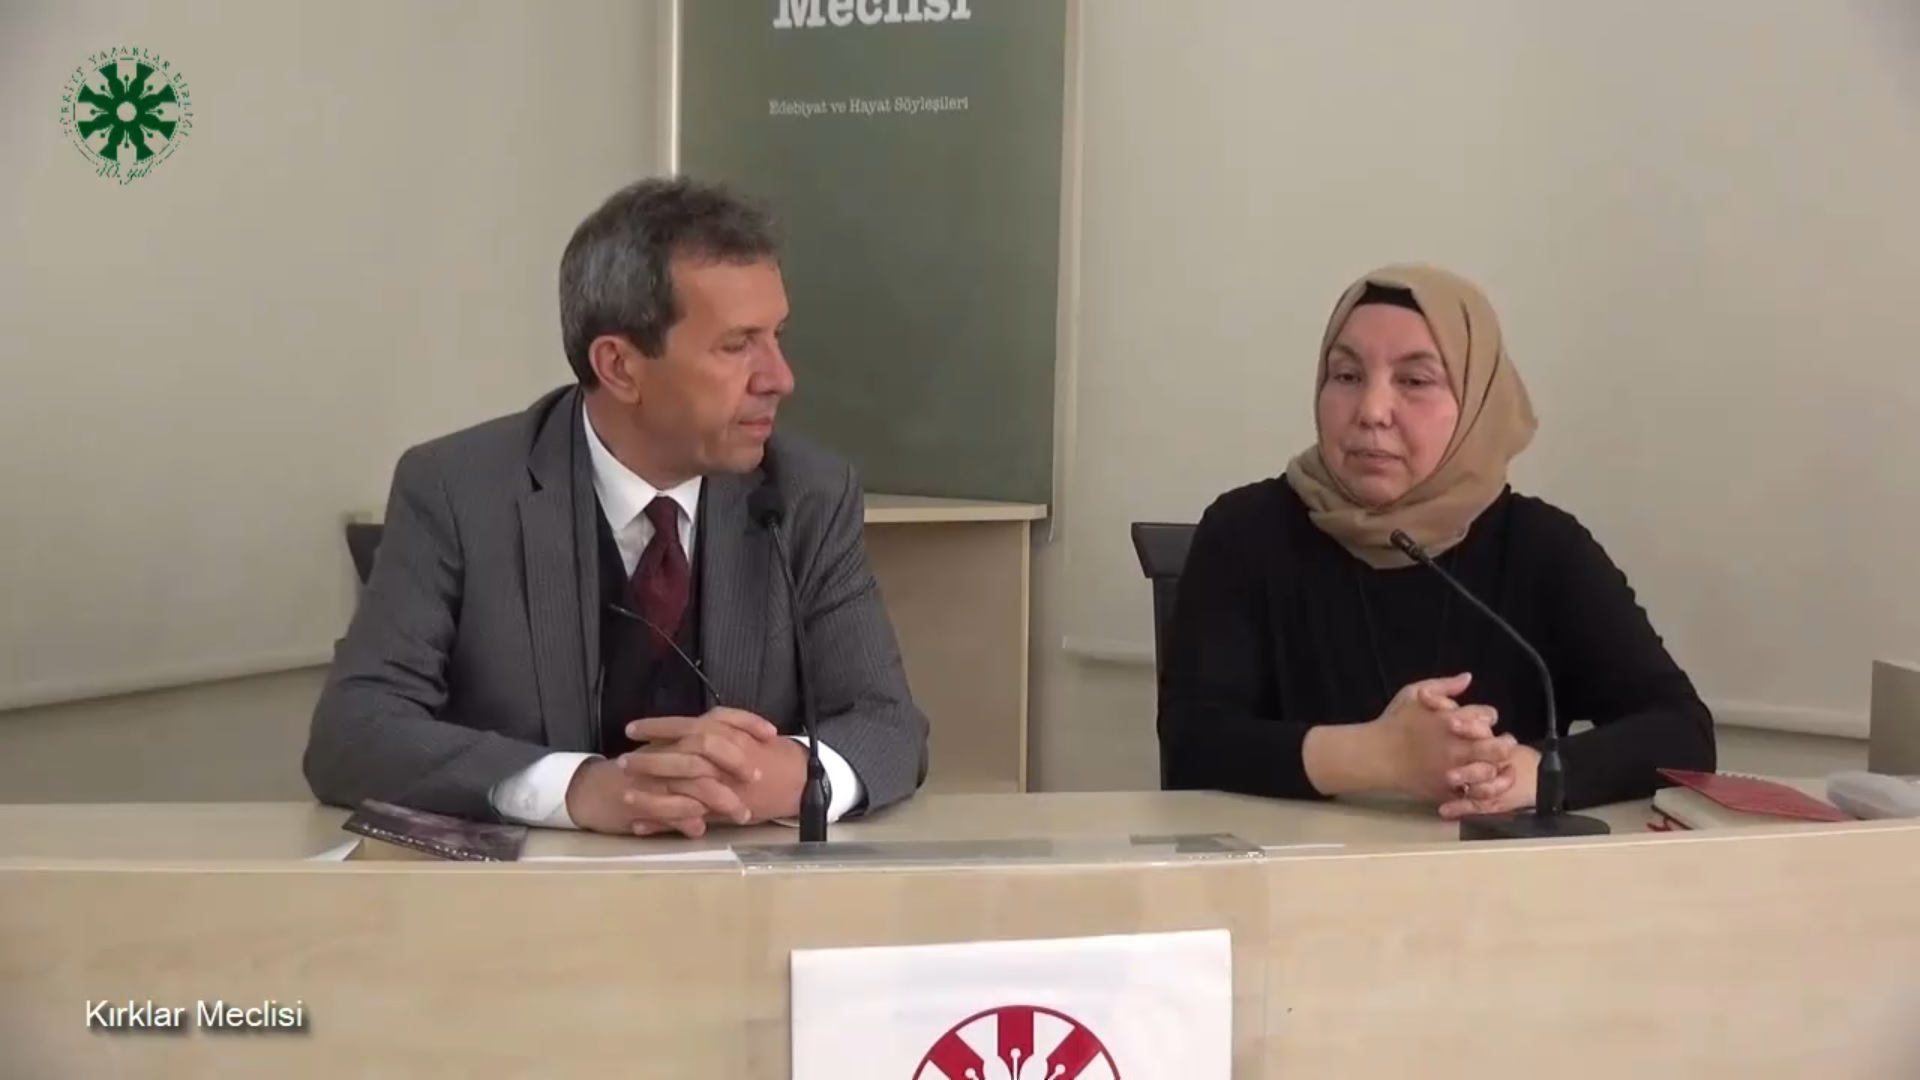 Kırklar Meclisi -13- Yıldız Ramazanoğlu (video)